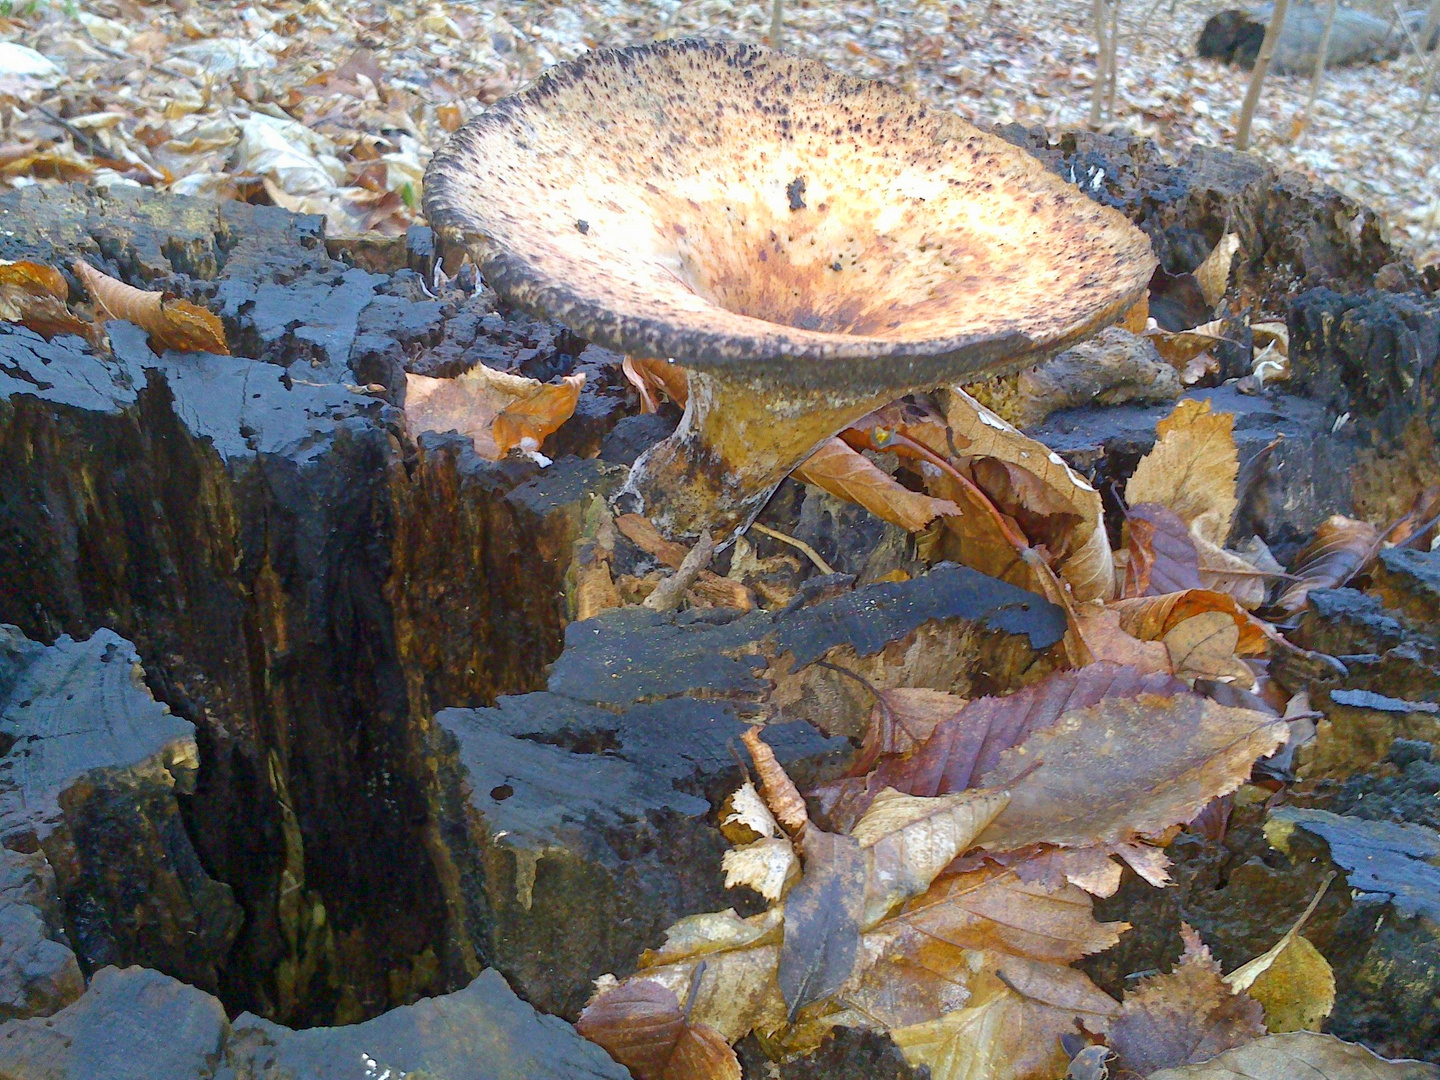 Diesen Pilz fand ich heute beim Hundespaziergang im Wald.